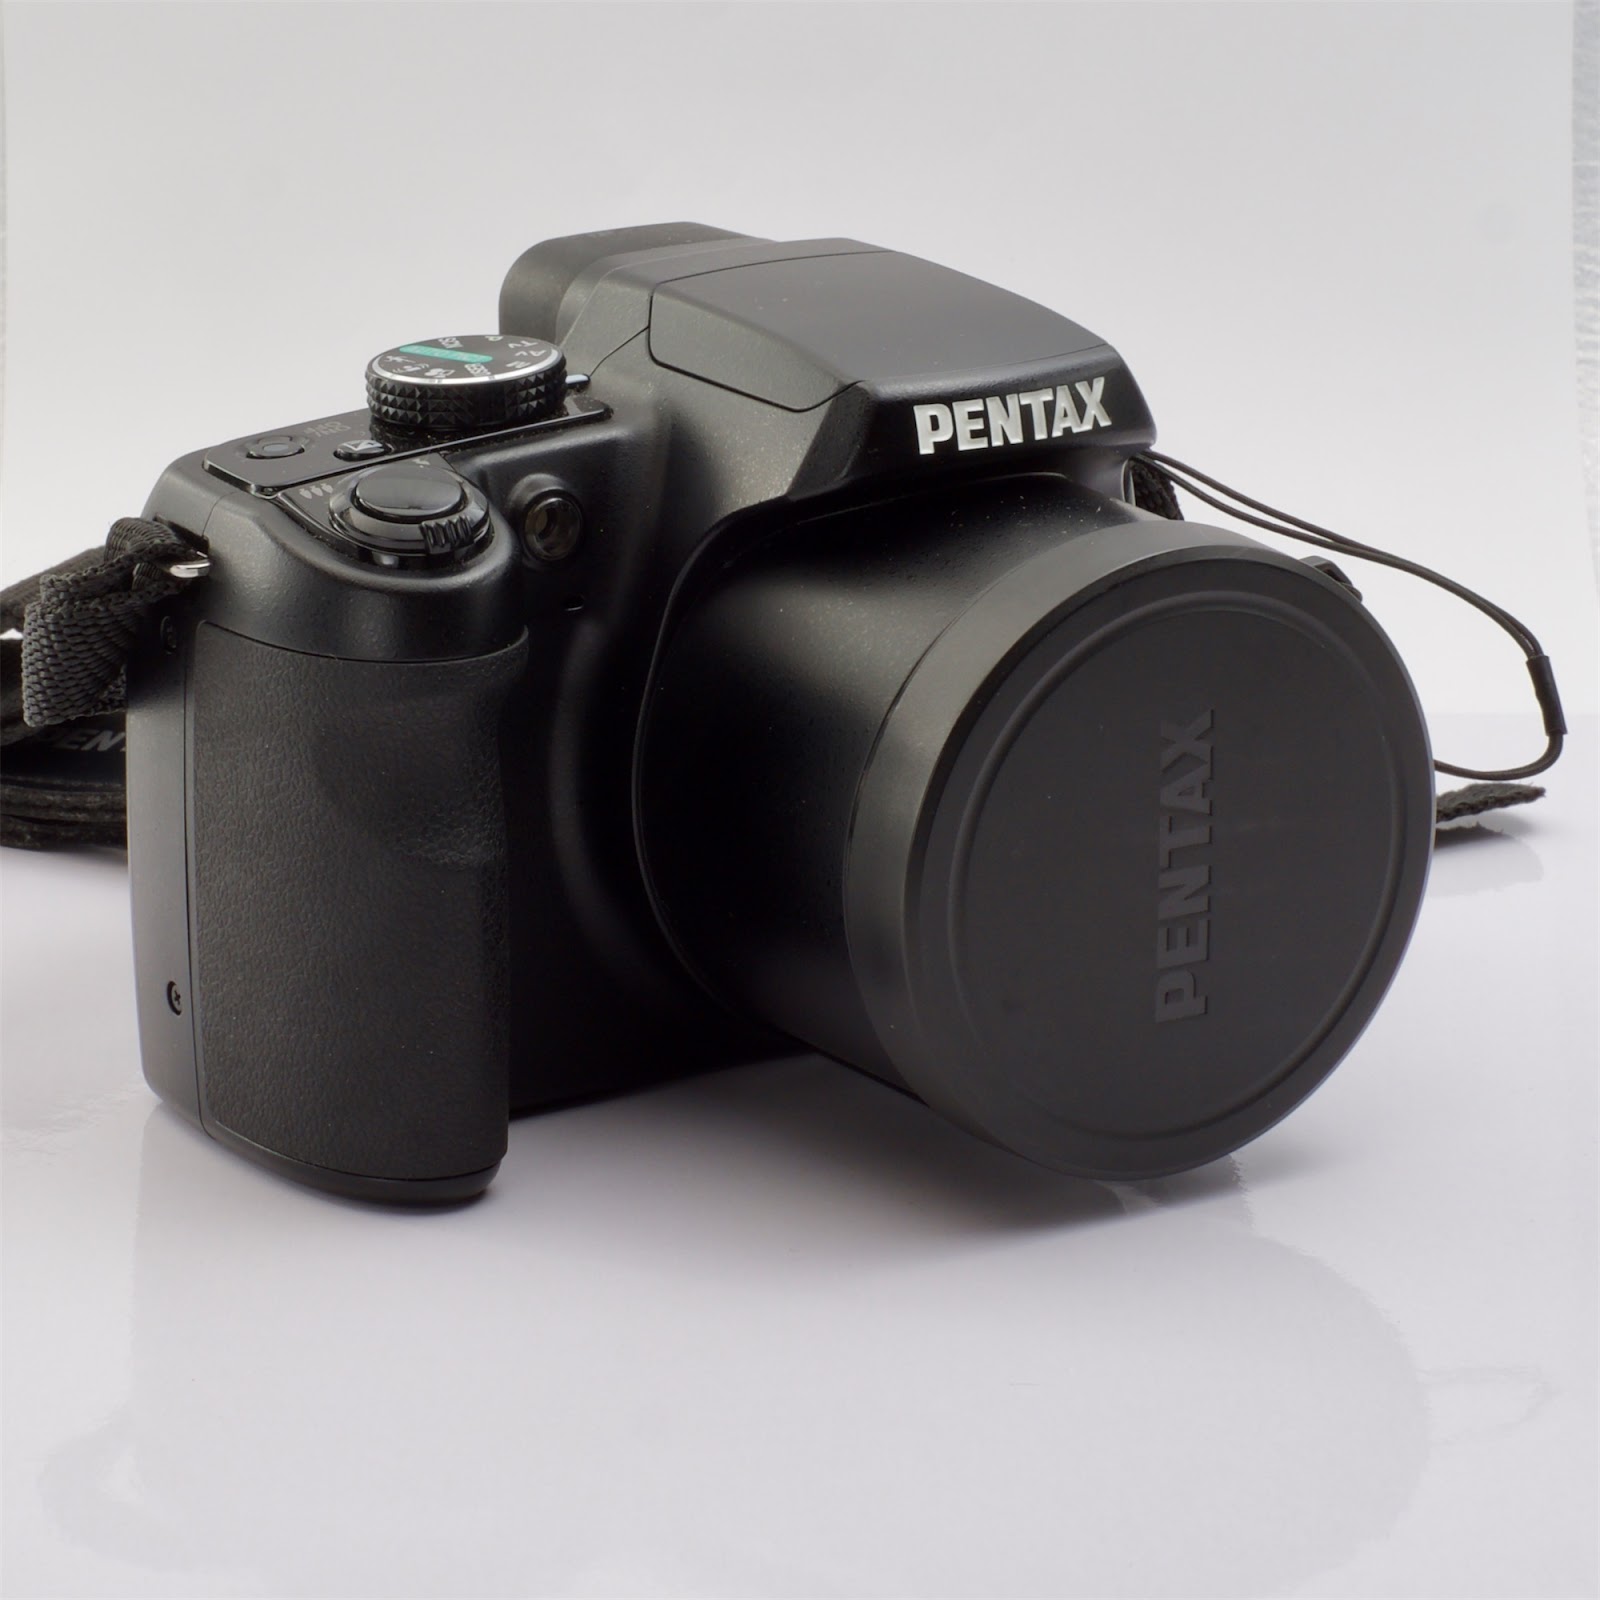 ビール最高！ 〜愛知と三重でモデル撮影〜: 8年前のおじいちゃんデジカメ「Pentax X70」を買った。